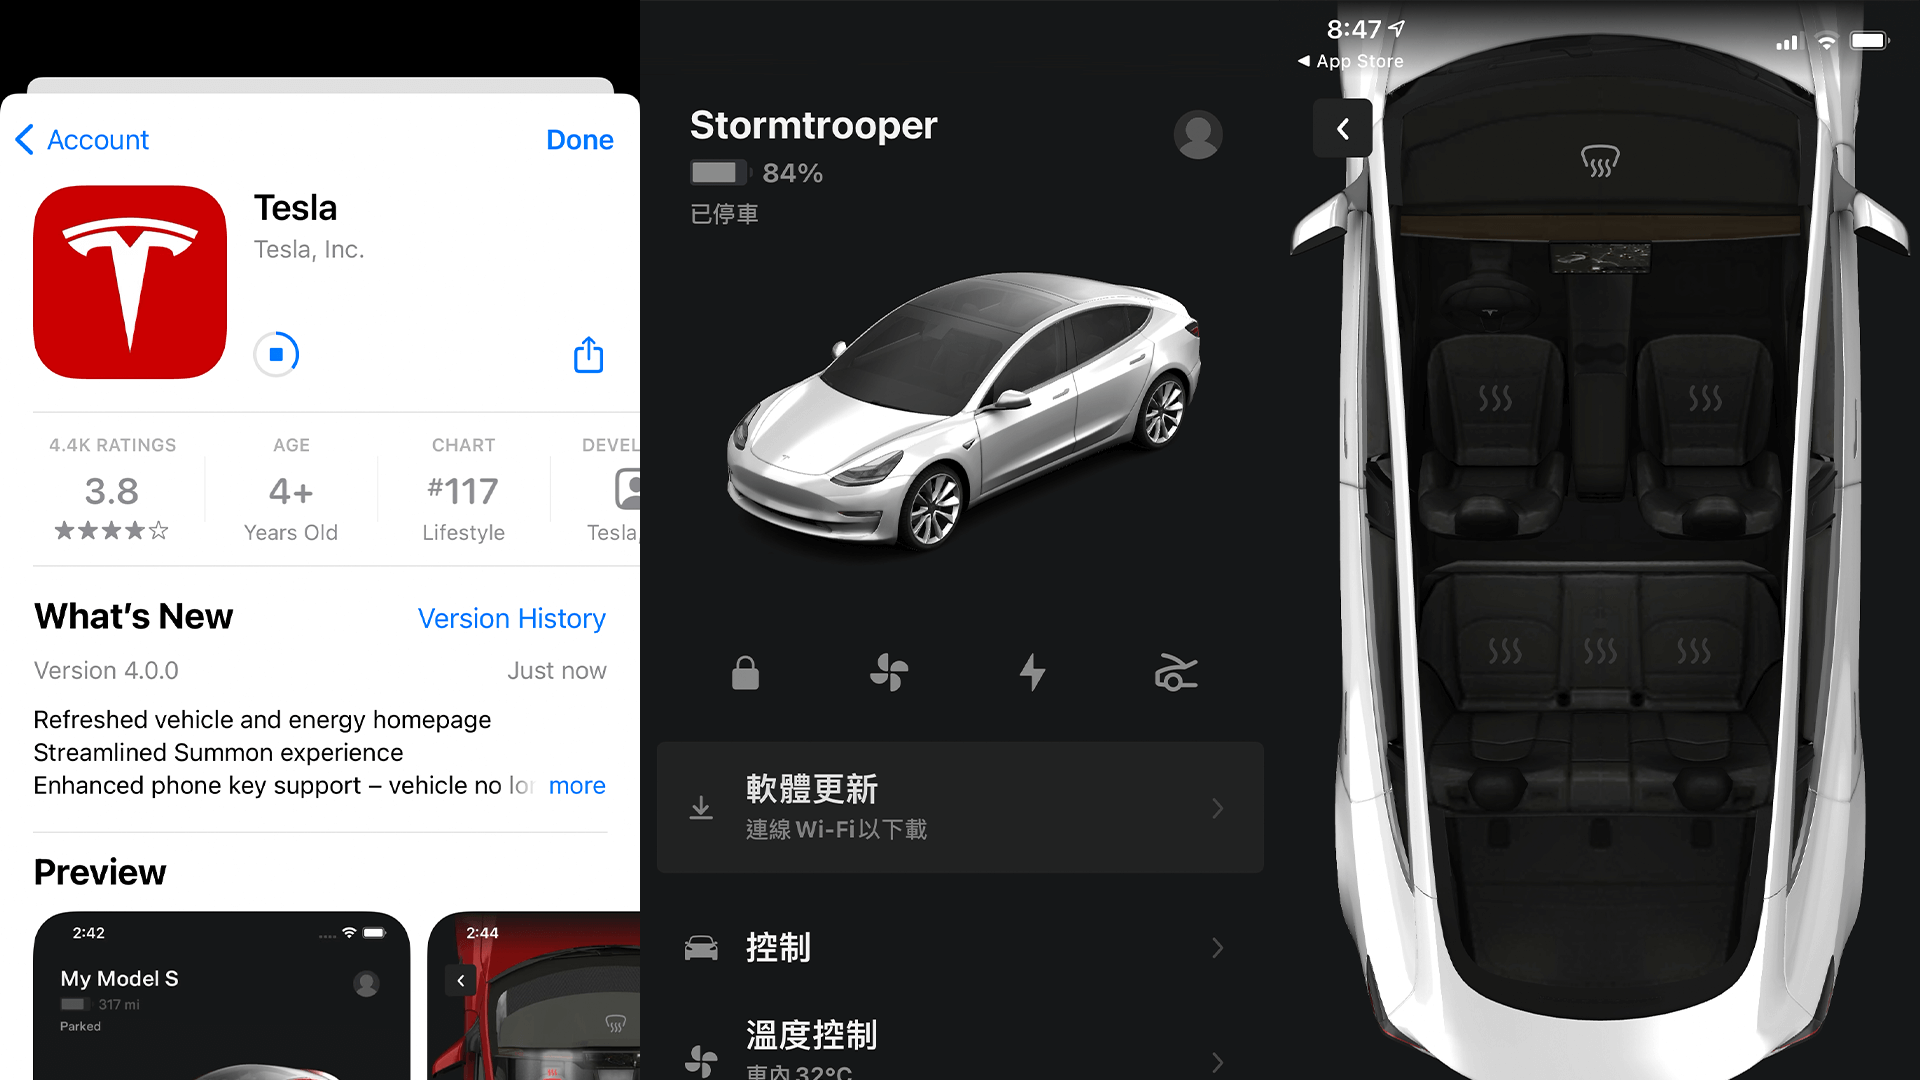 Tesla App 更新 4.0 版 全新視覺設計 UI 加入更多動畫元素